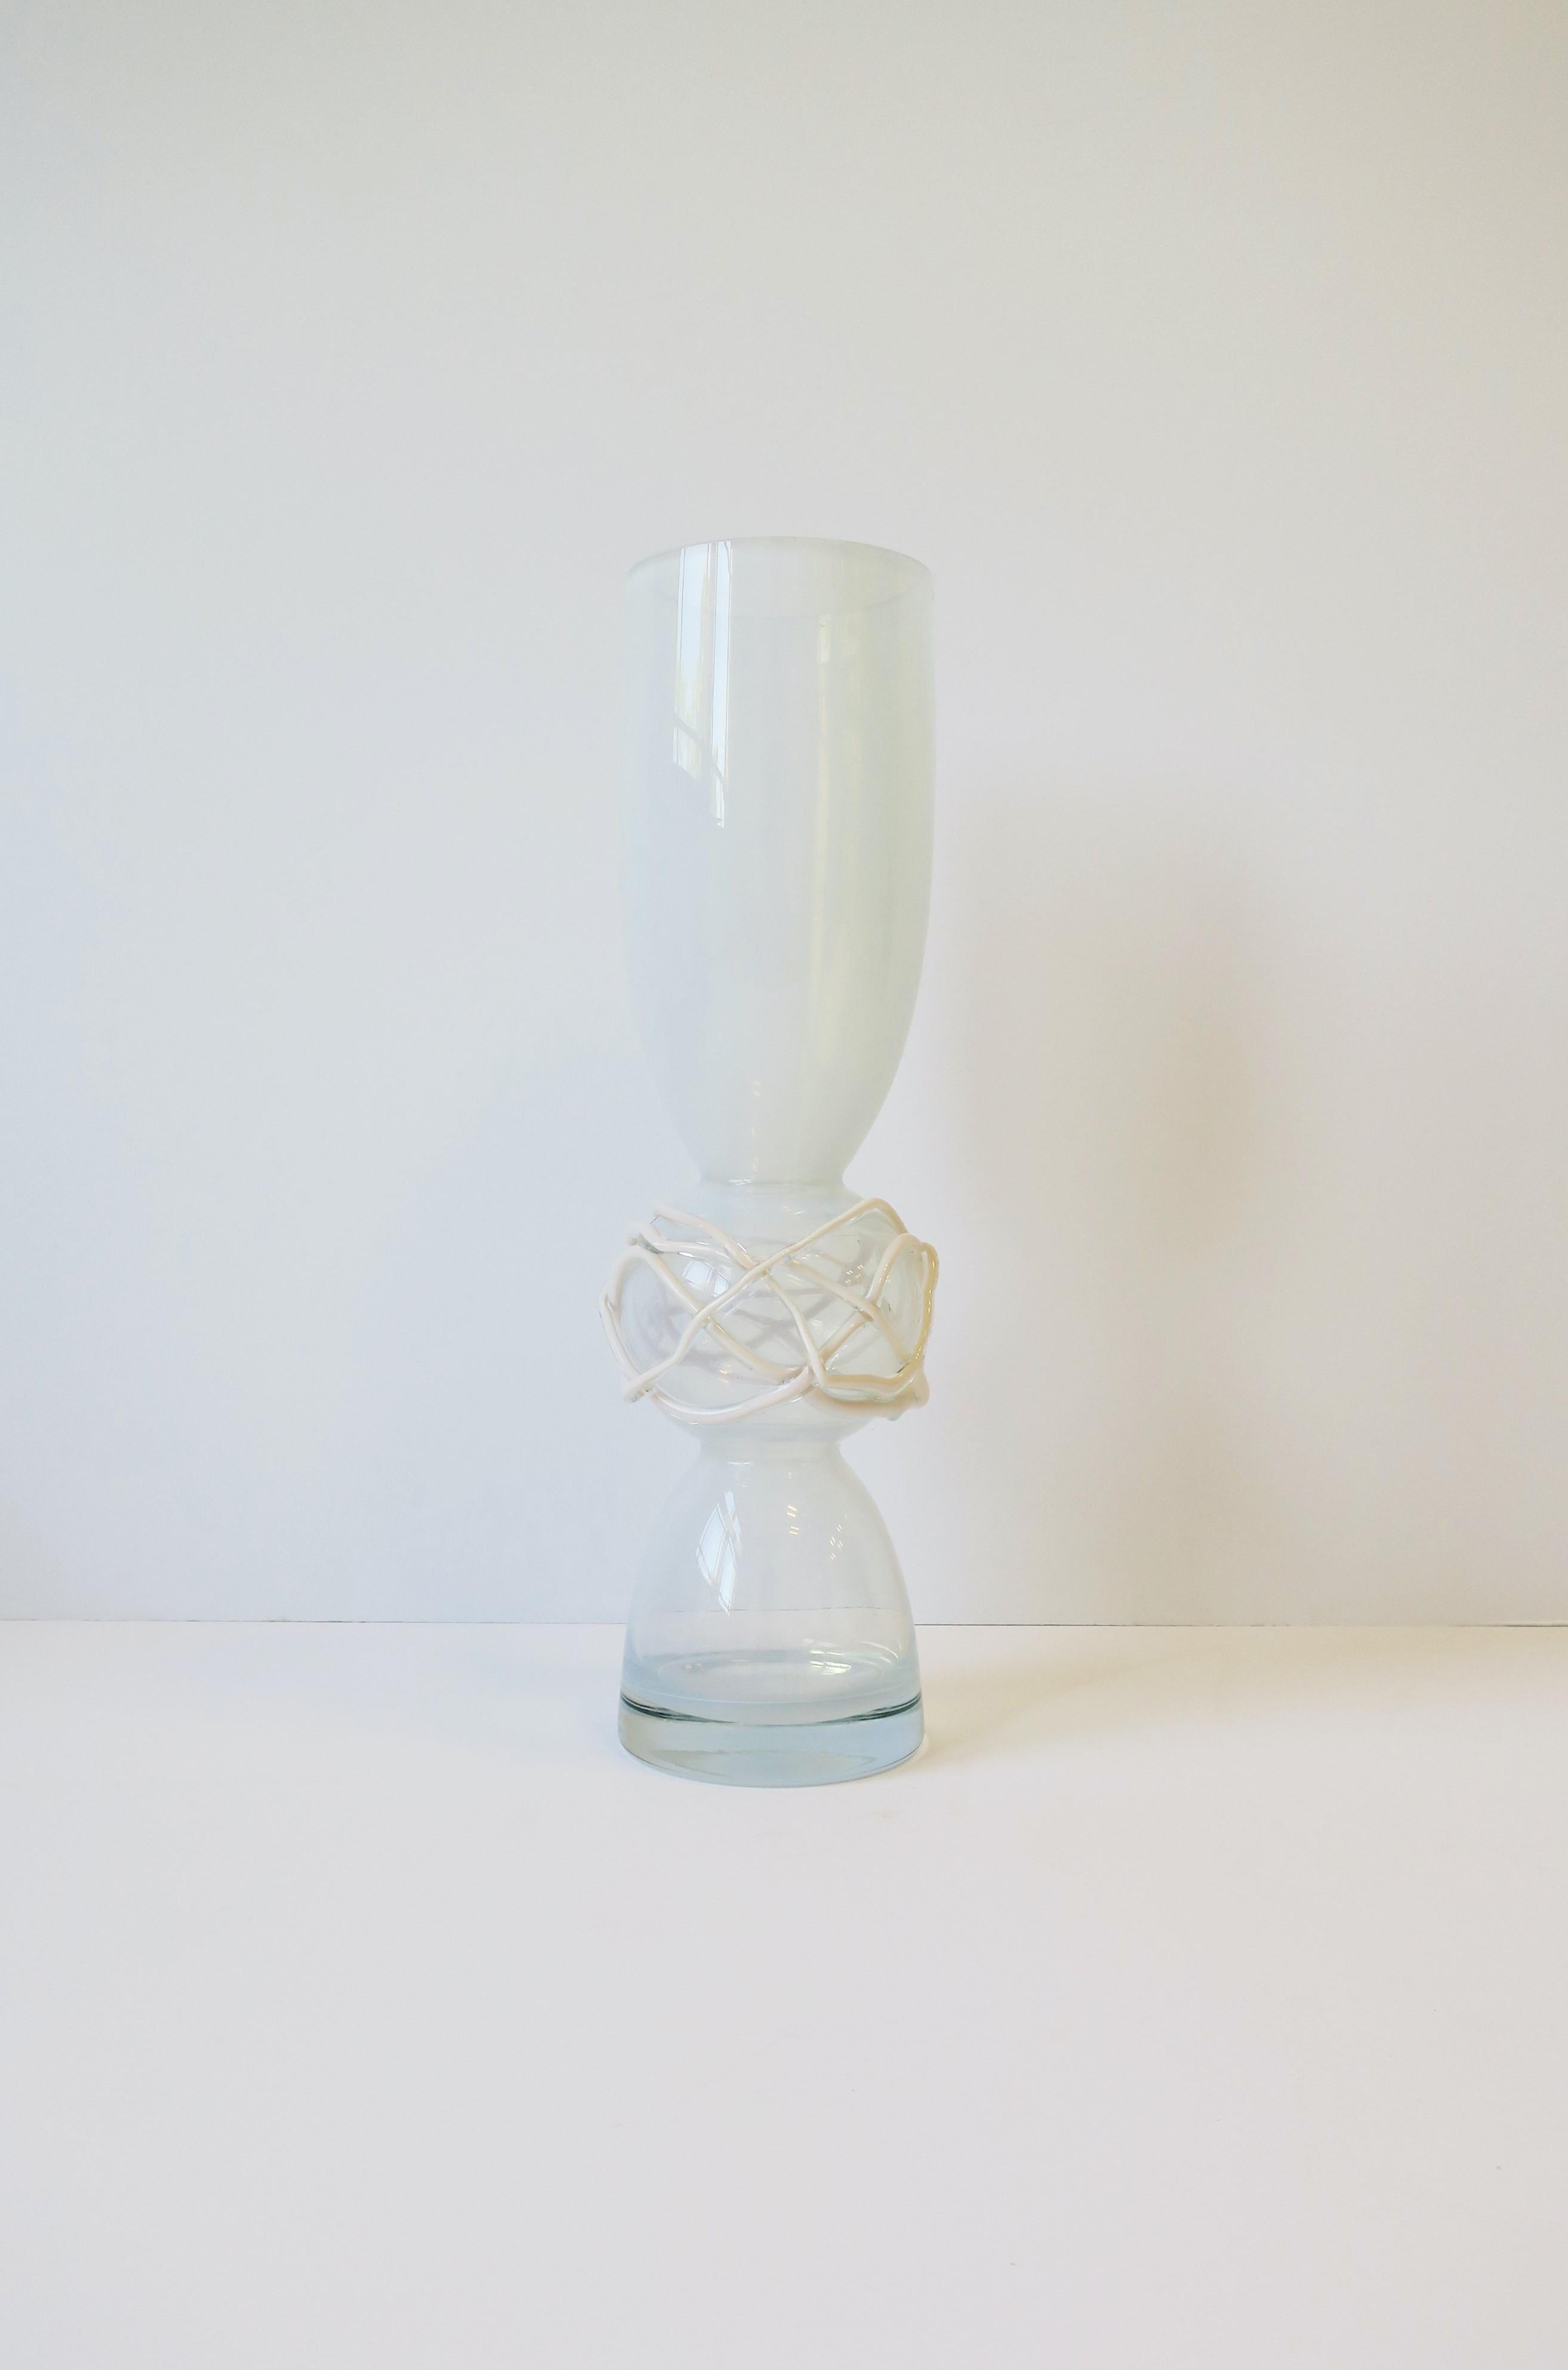 Eine schöne, hohe und massive Vase aus abstraktem postmodernen Kunstglas aus klarem und weißem Opalglas mit leichtem Schimmer, circa Ende des 20. Jahrhunderts. Die Kugel in der Mitte hat ein abstraktes Muster aus klarem und gedrehtem weißen